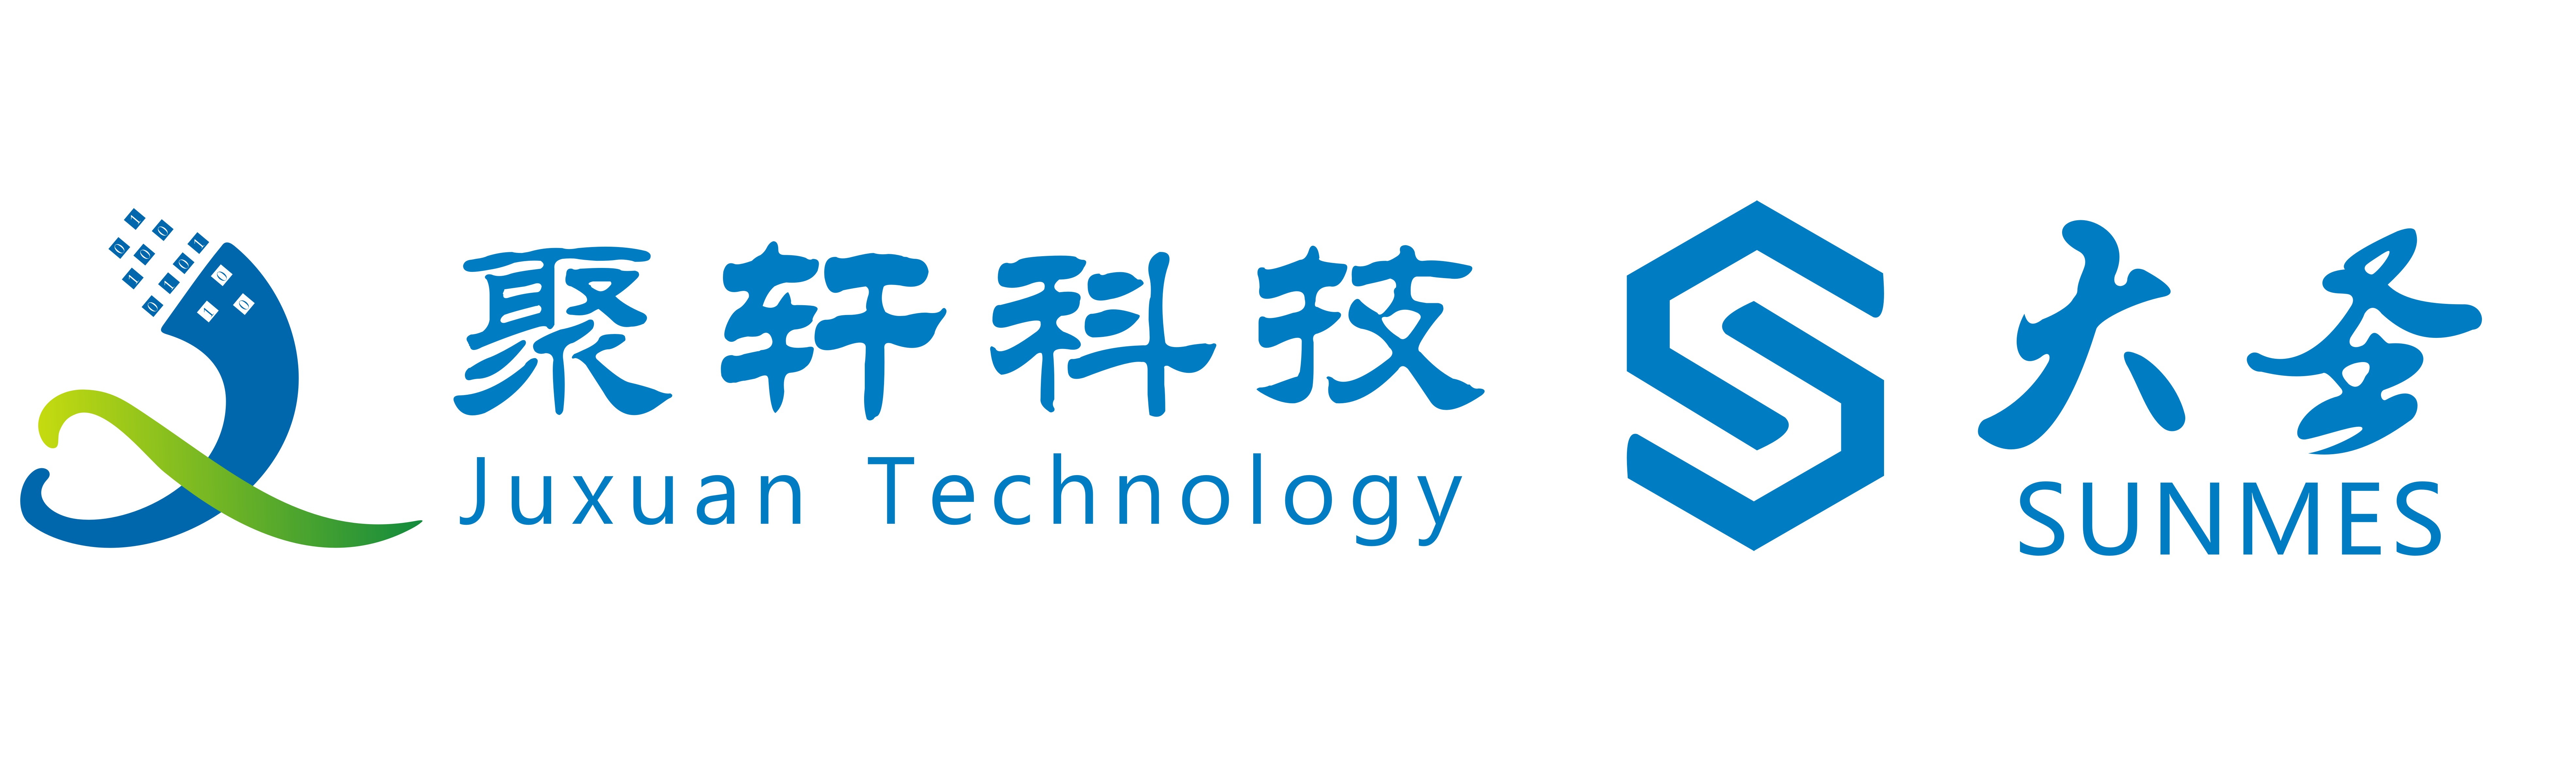 宁波聚轩信息科技有限公司